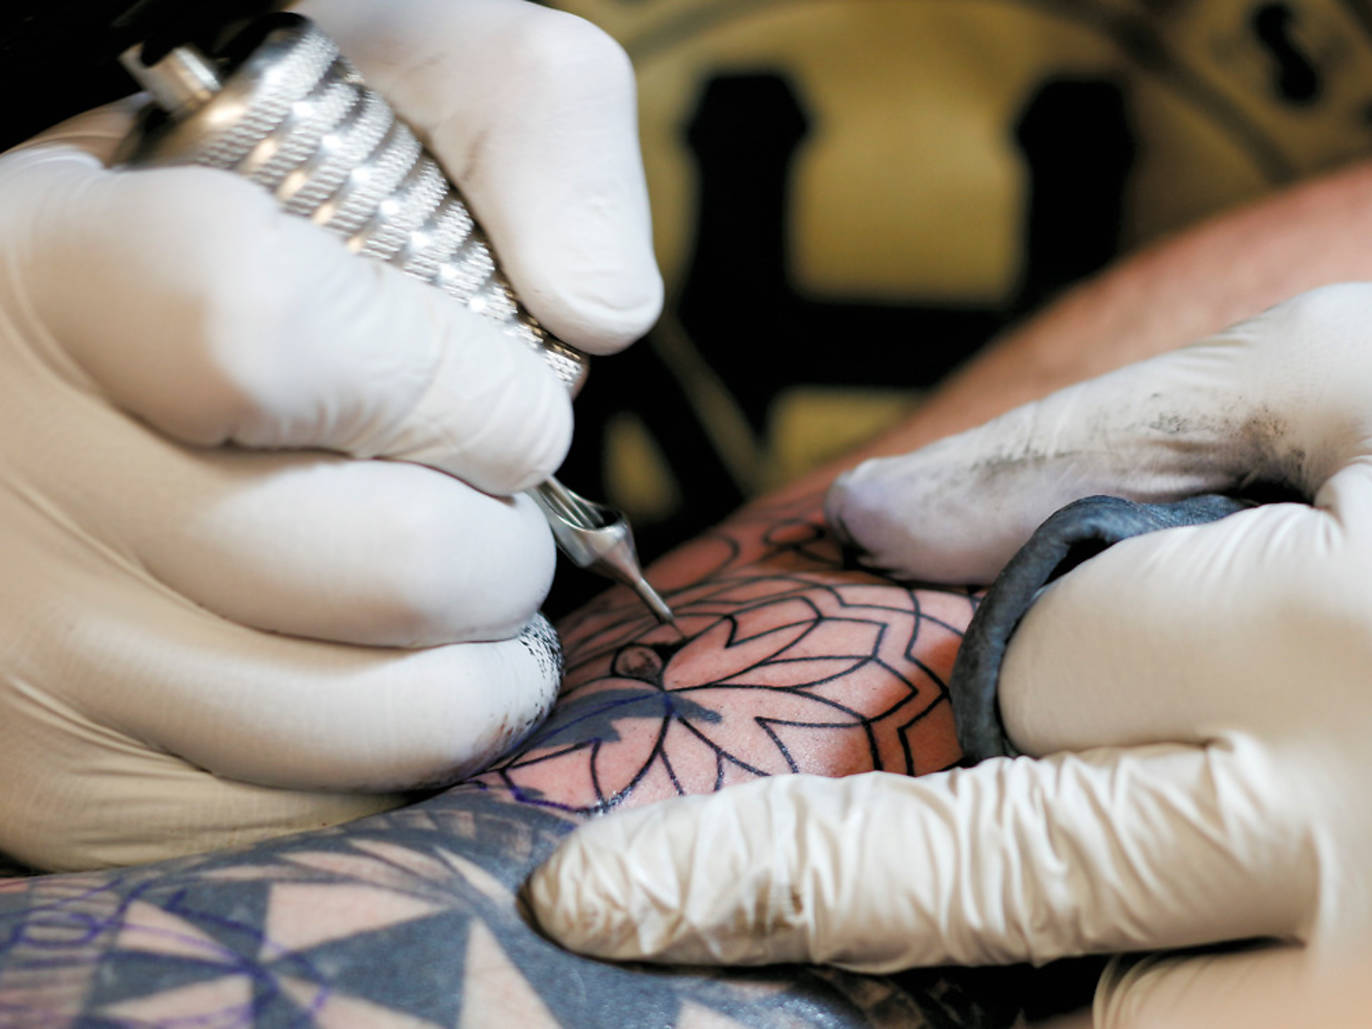 Pin by Jennifer Bartman on Tattoo Ideas | Fertility tattoo, Symbolic tattoos,  Tattoos